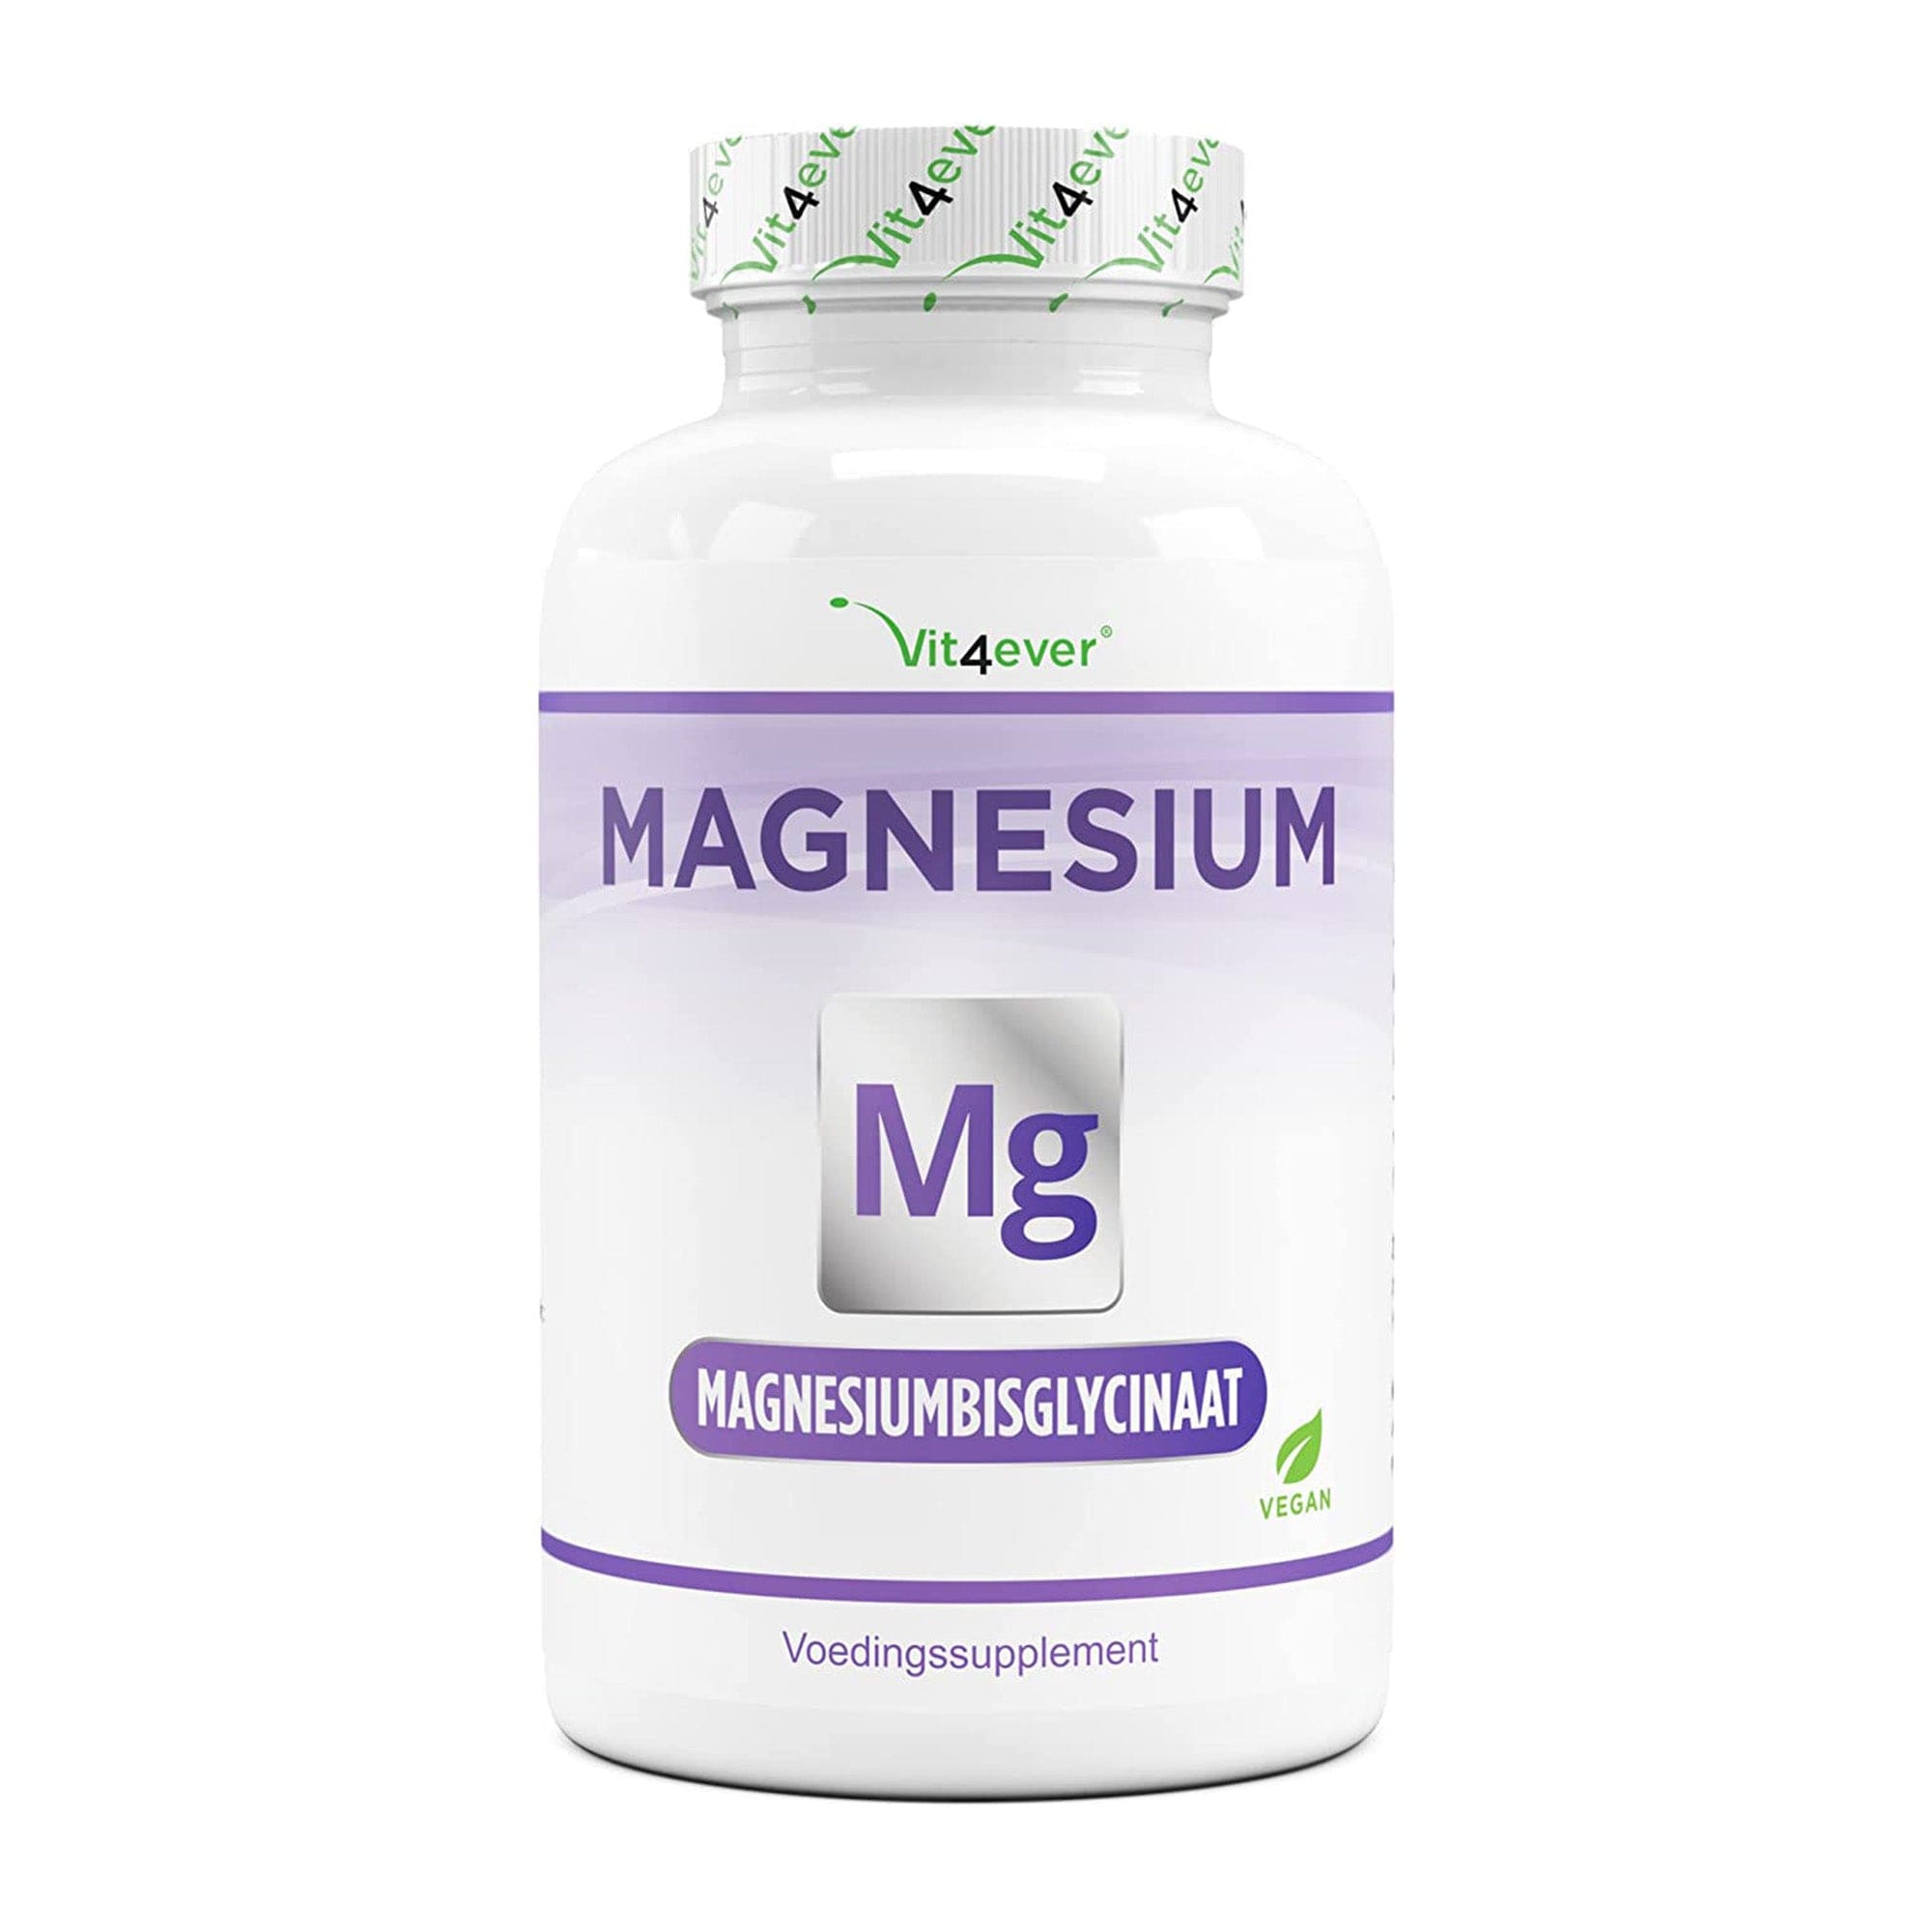 vit4ever Magnesium bisglycinaat 365 capsules 